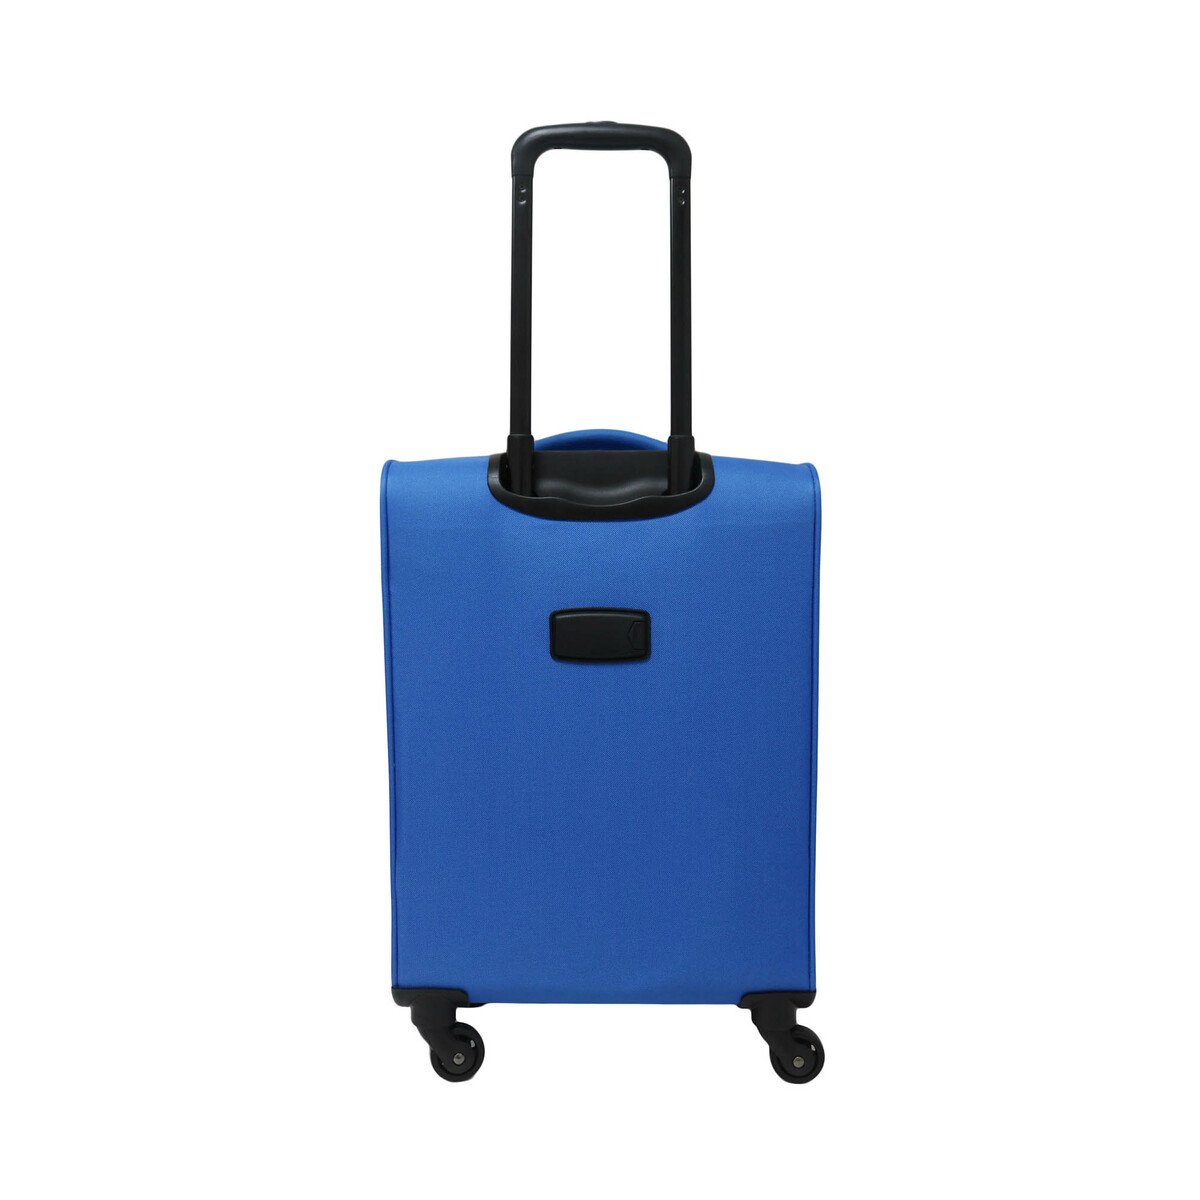 Wagon-R Hard Trolley Bag AP7295 24inch